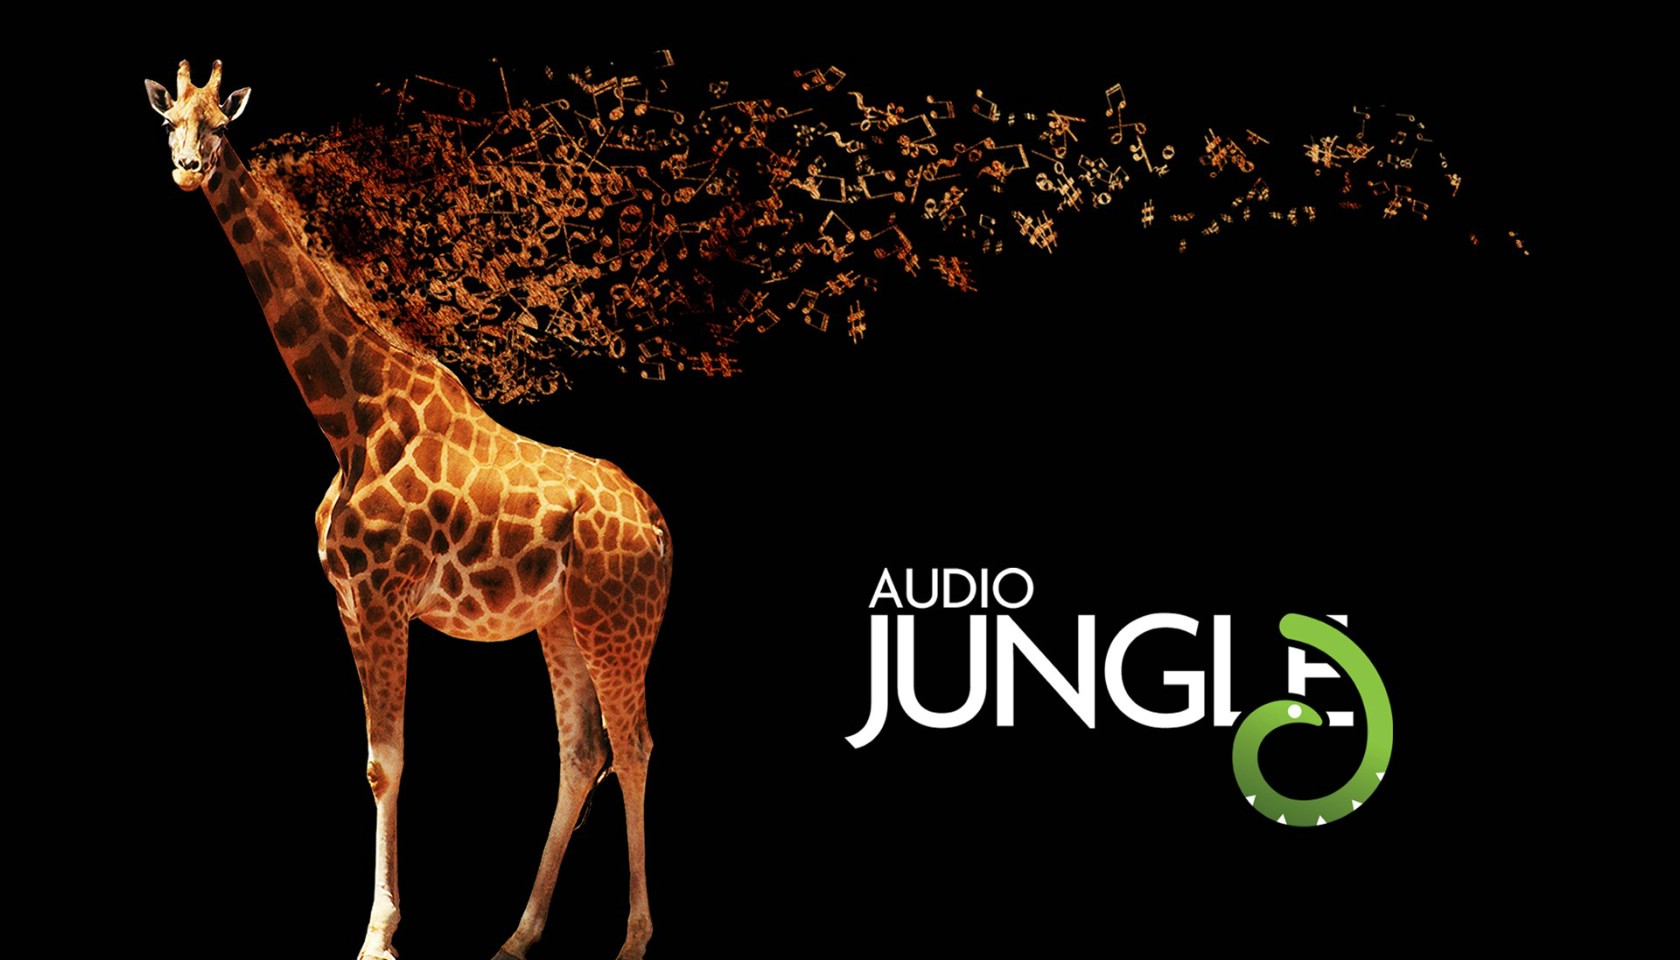 壁纸1680x960 长颈鹿 Audio Jungle 创意壁纸壁纸 Audio Jungle 主题设计壁纸壁纸 Audio Jungle 主题设计壁纸图片 Audio Jungle 主题设计壁纸素材 插画壁纸 插画图库 插画图片素材桌面壁纸